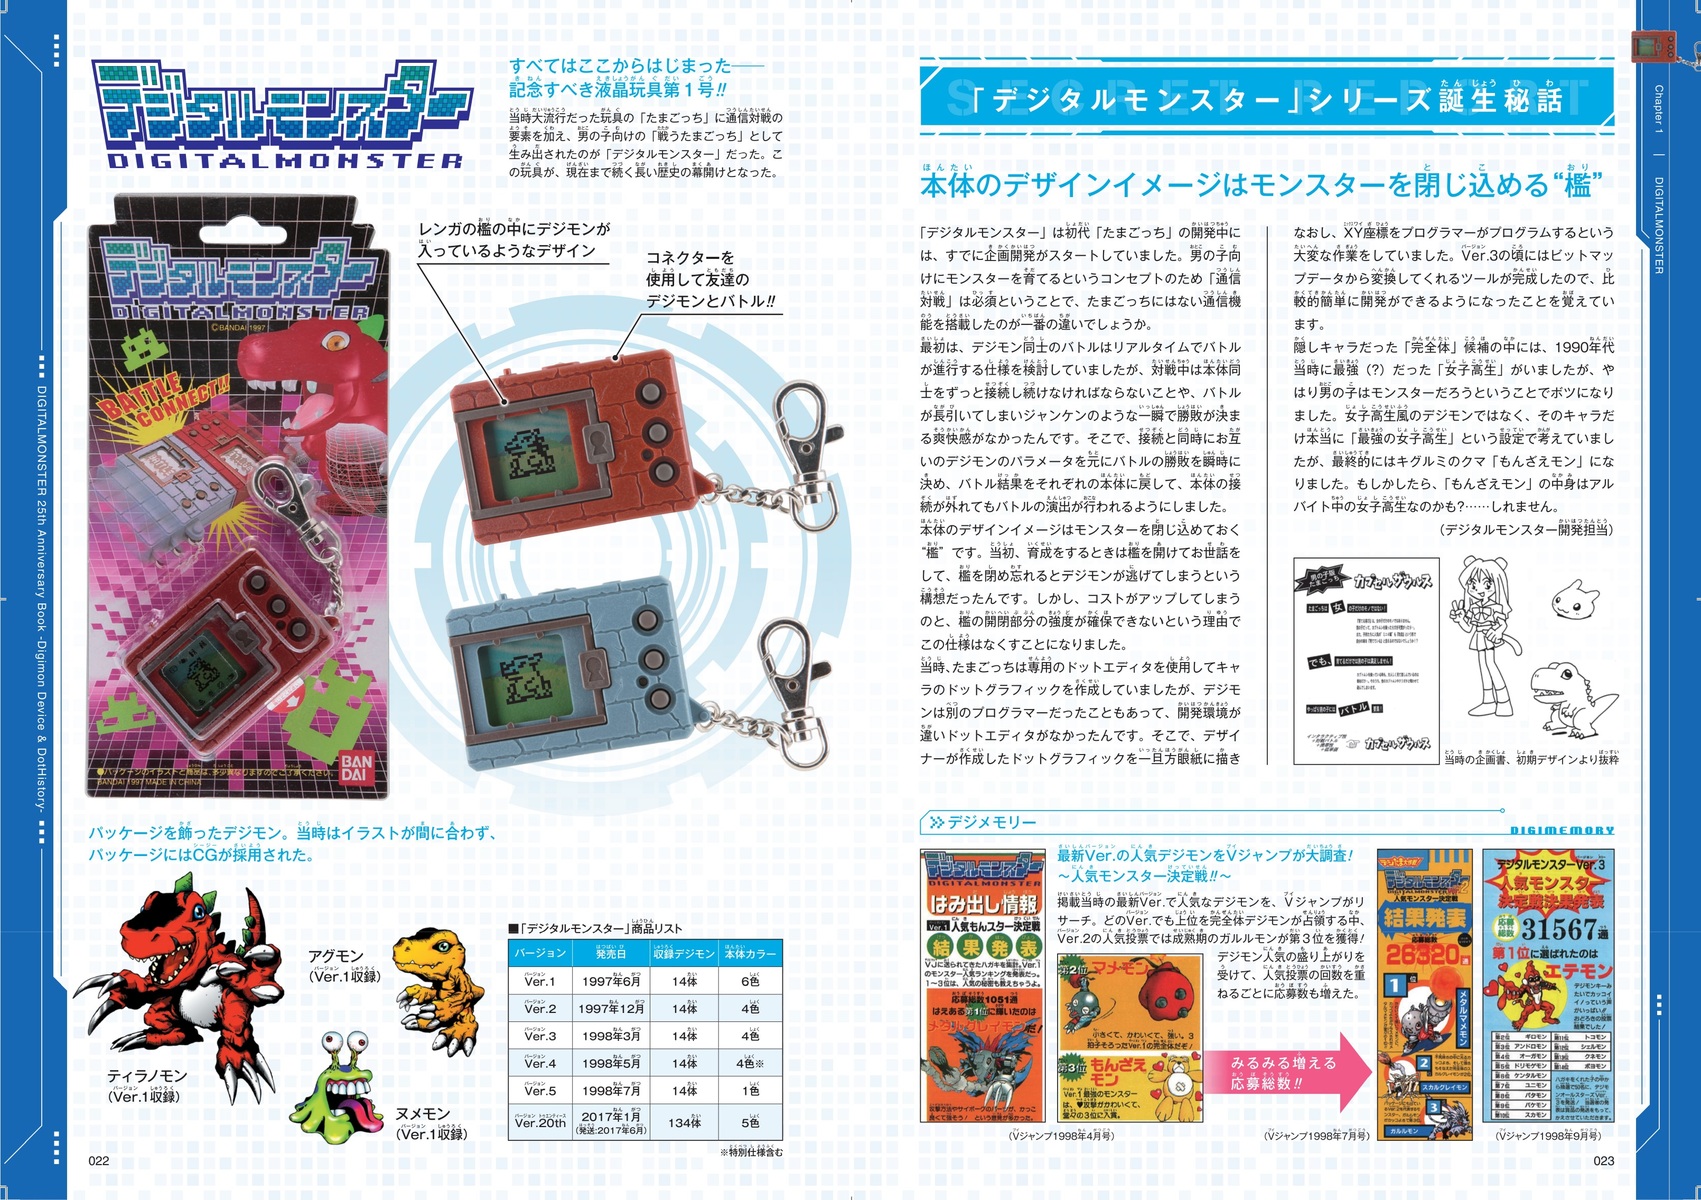 バンダイ公式 デジタルモンスター 25th Anniversary Book ―Digimon